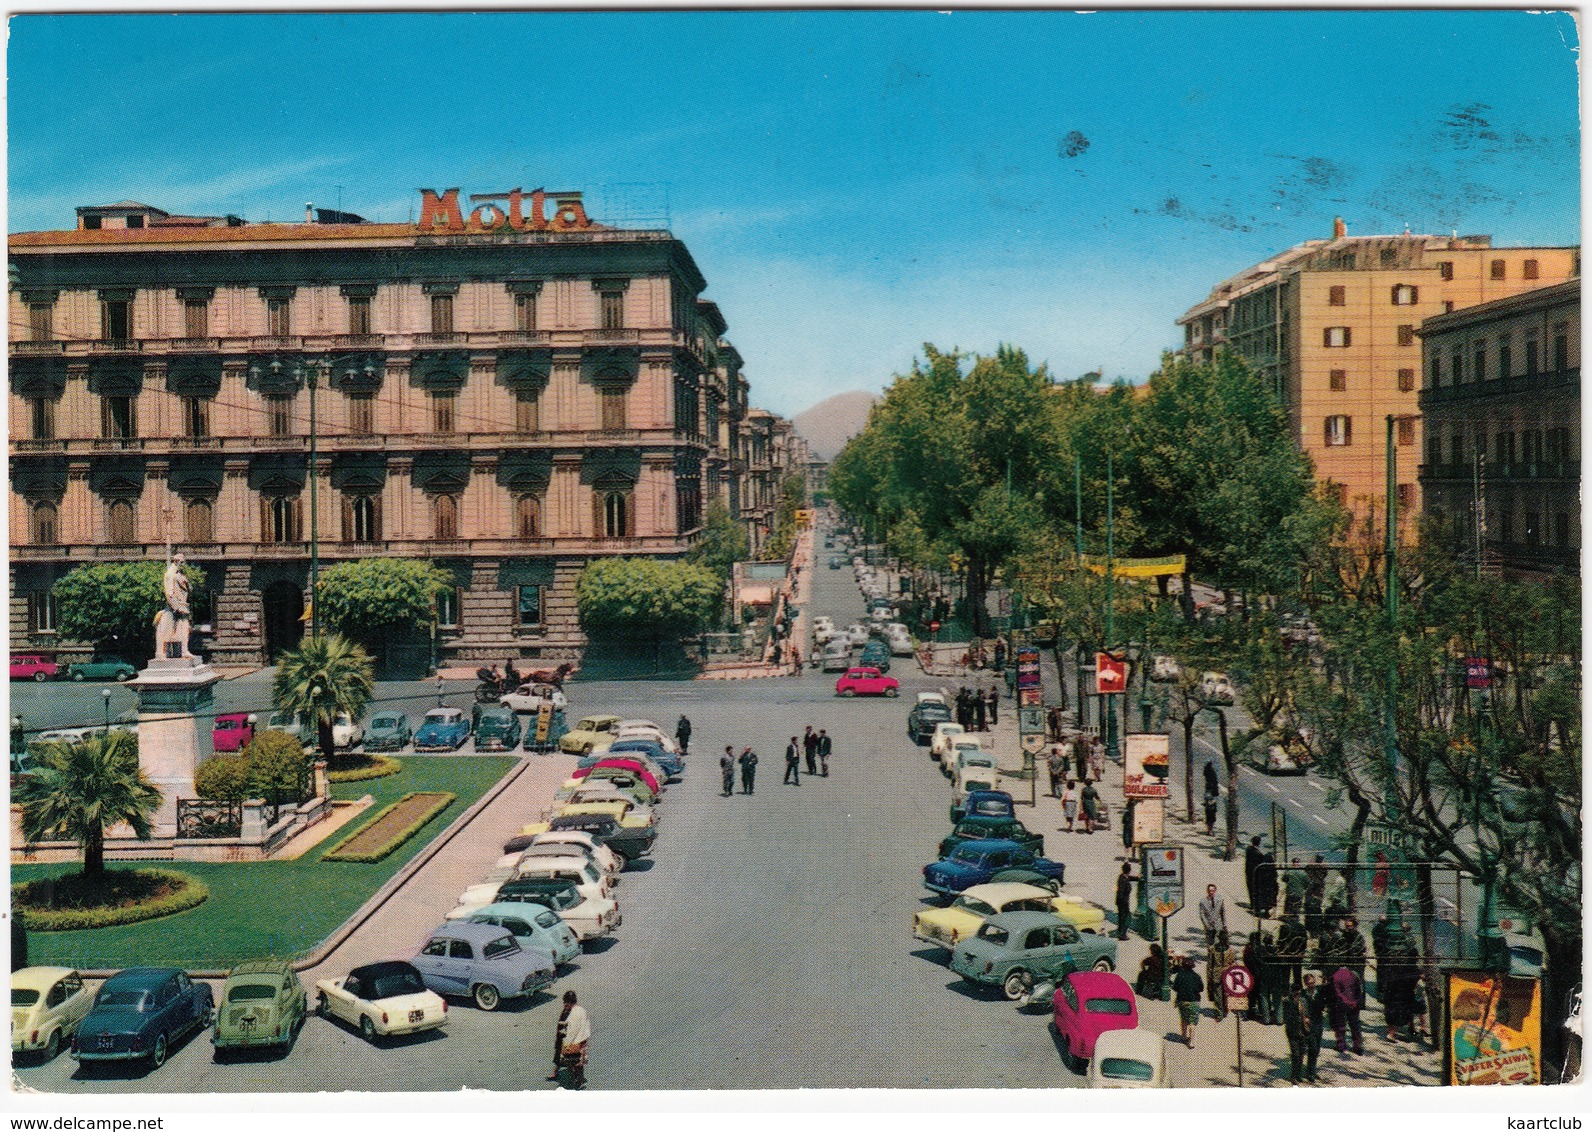 Palermo: FIAT 1200 CABRIOLET,600,1400,1100, OPEL REKORD P1, RENAULT DAUPHINE,FORD ANGLIA, INNOCENTI A40,MINI Via Libertà - Turismo